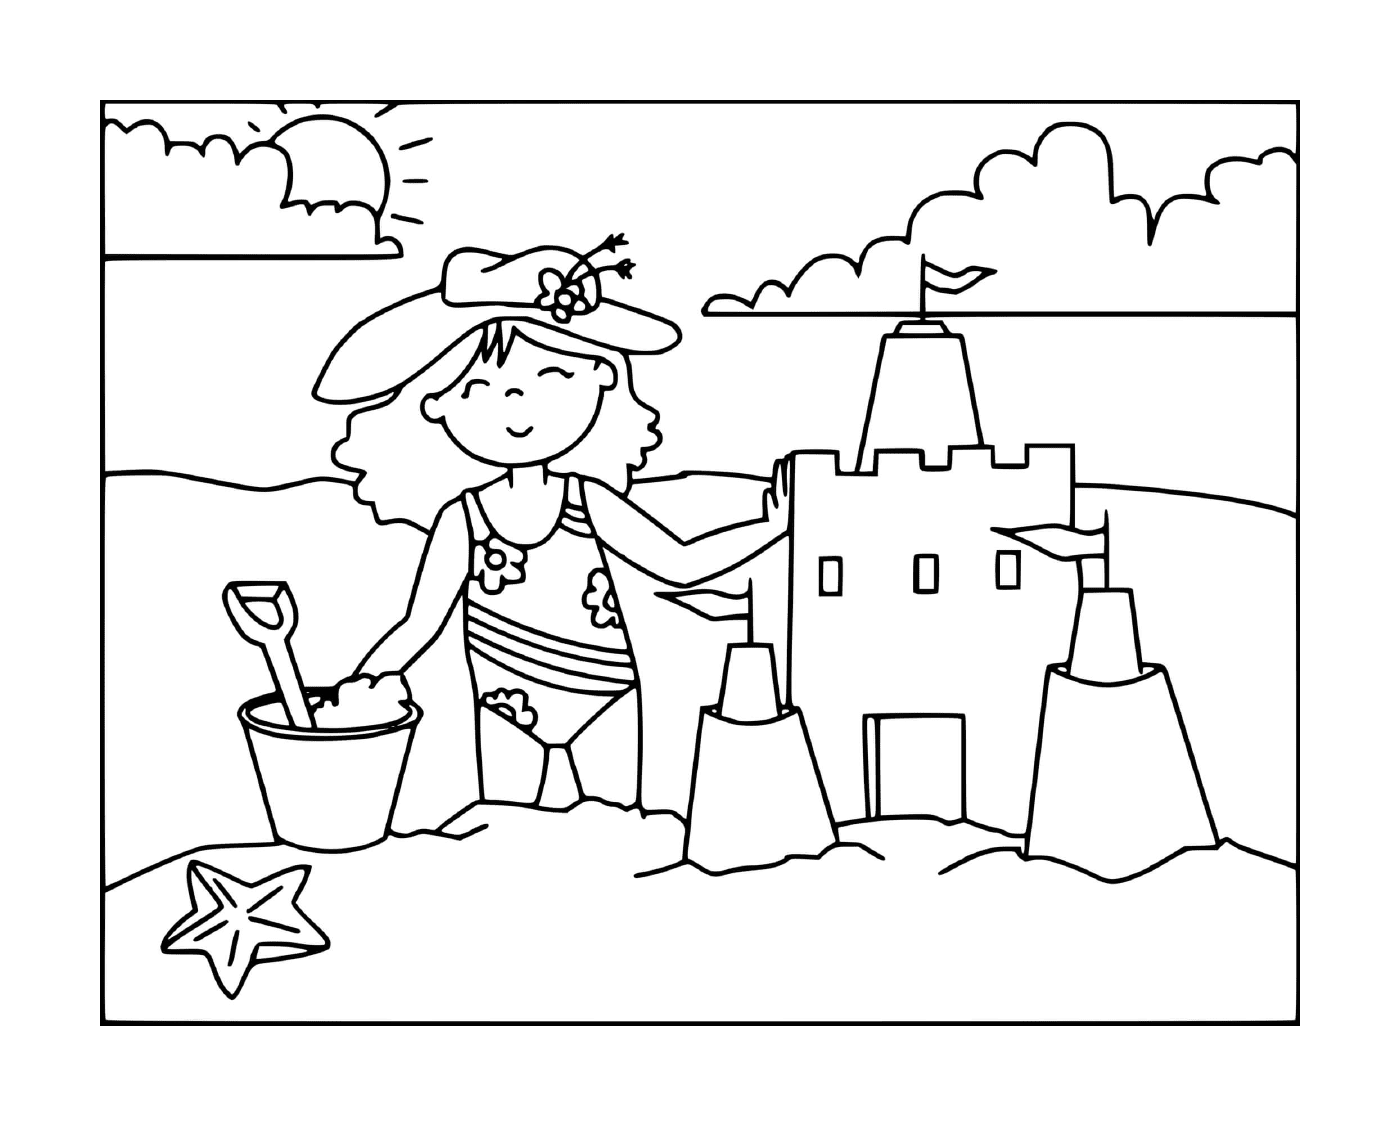  Uma menina constrói um castelo de areia na praia 